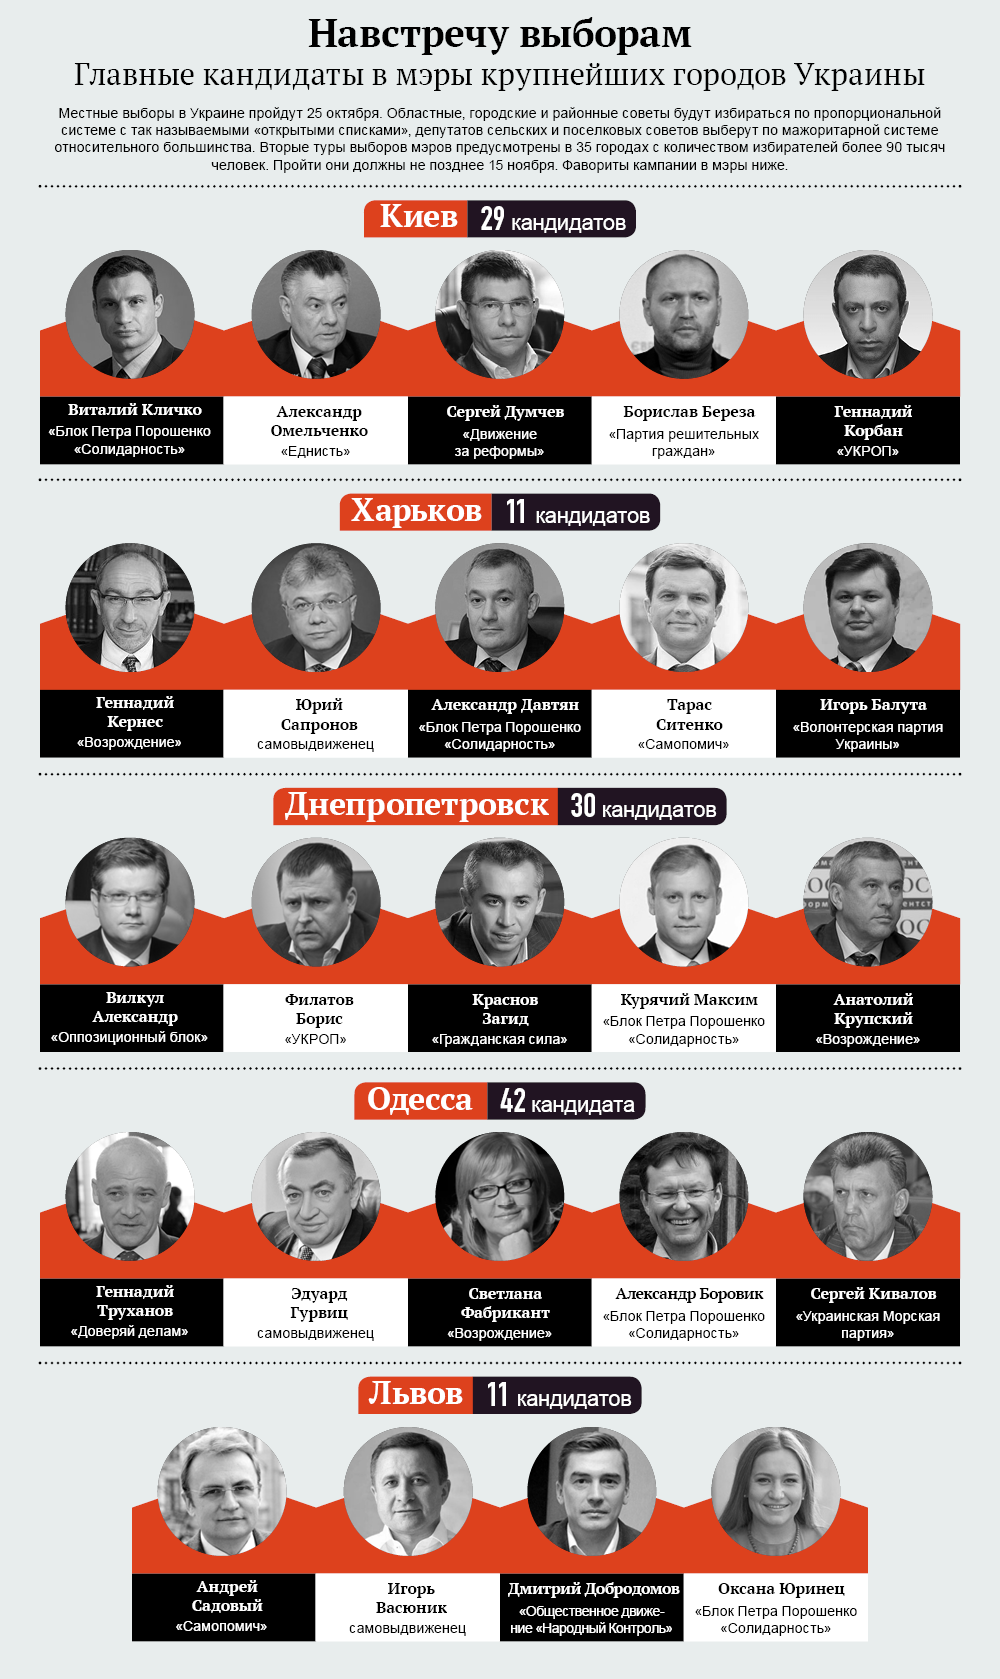 Главные кандидаты в мэры крупнейших городов Украины